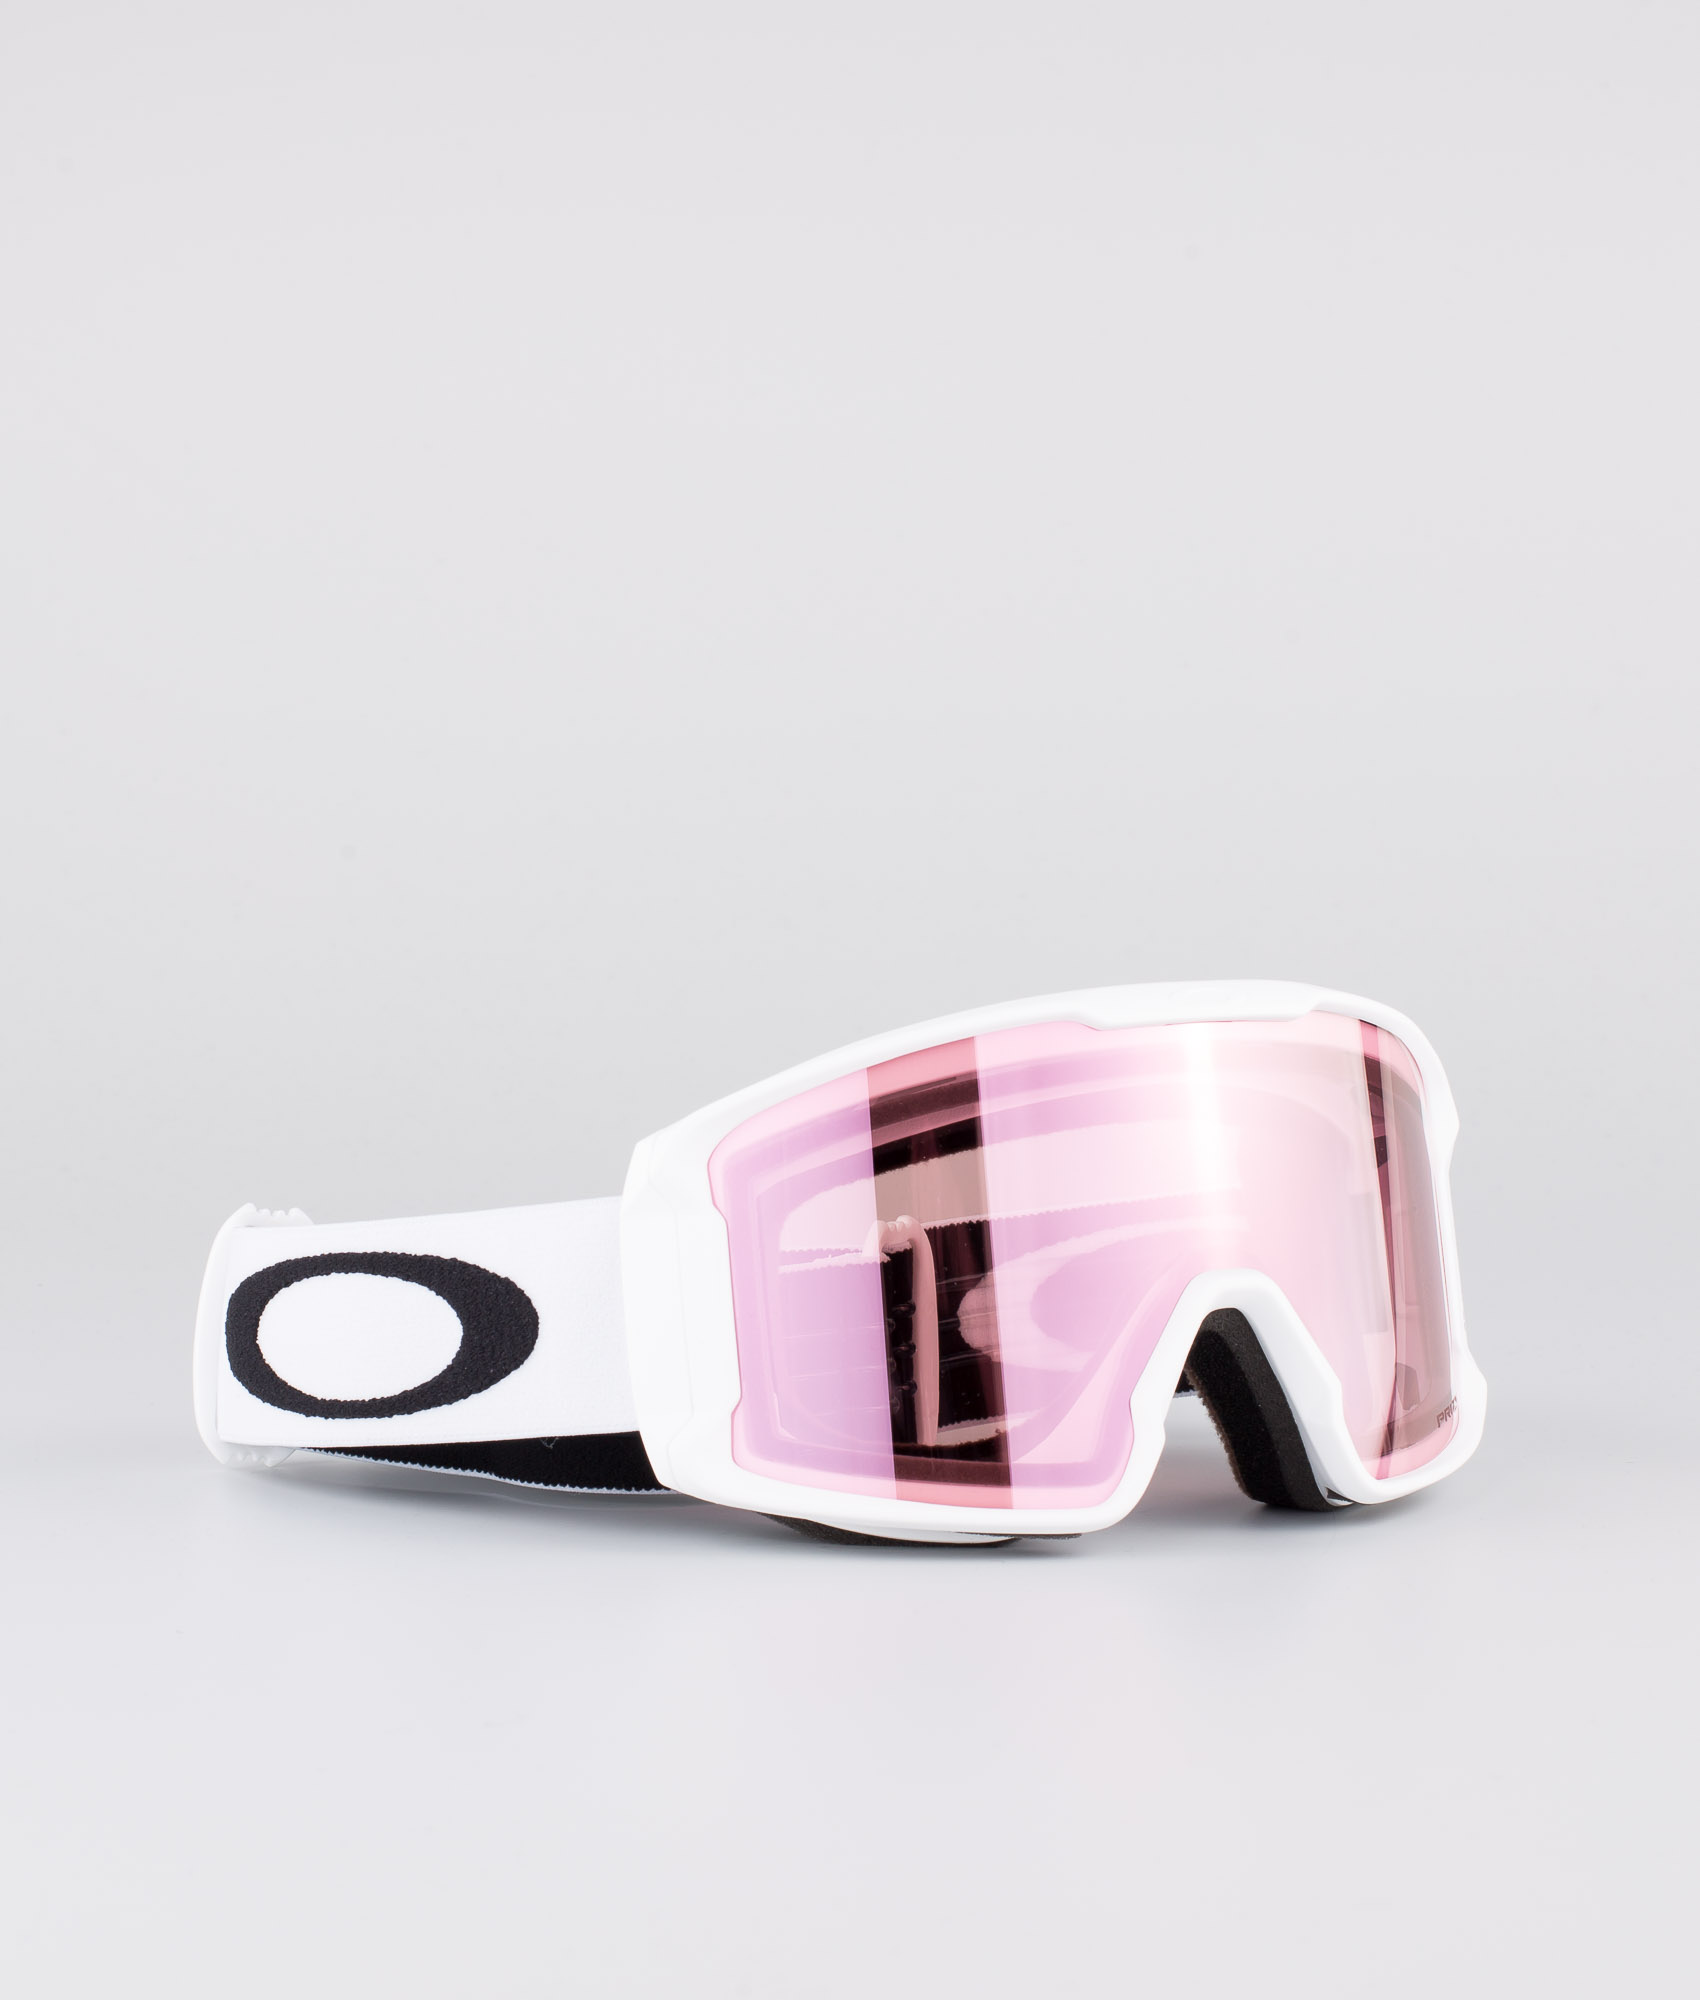 white oakley snowboard goggles